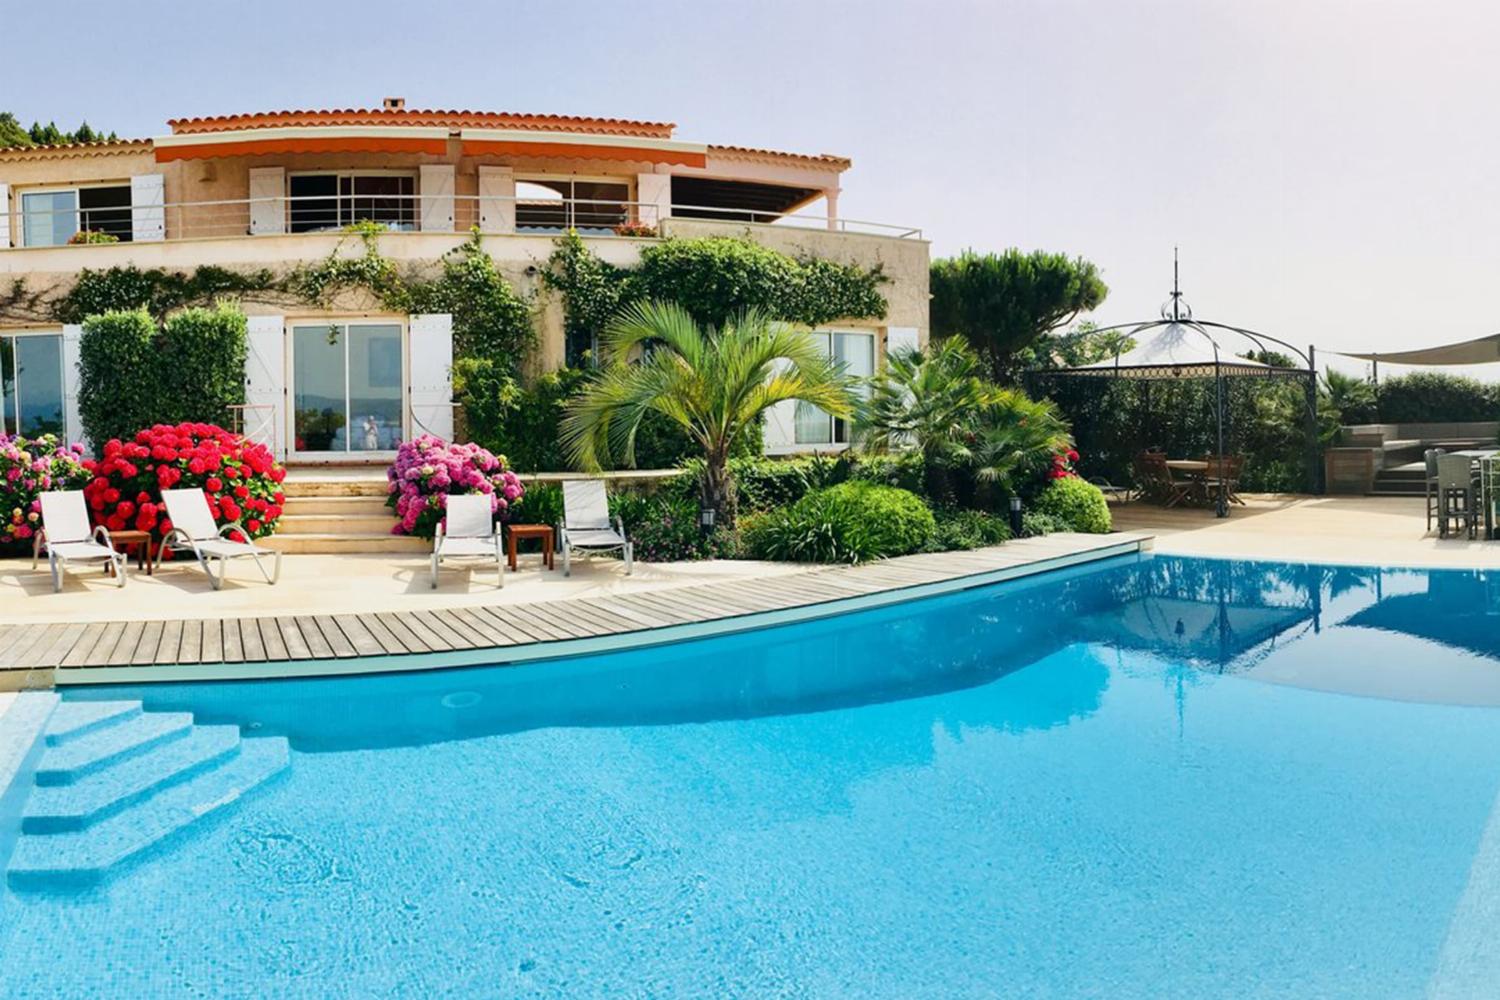 Villa de vacances en Corse avec piscine privée à débordement chauffée